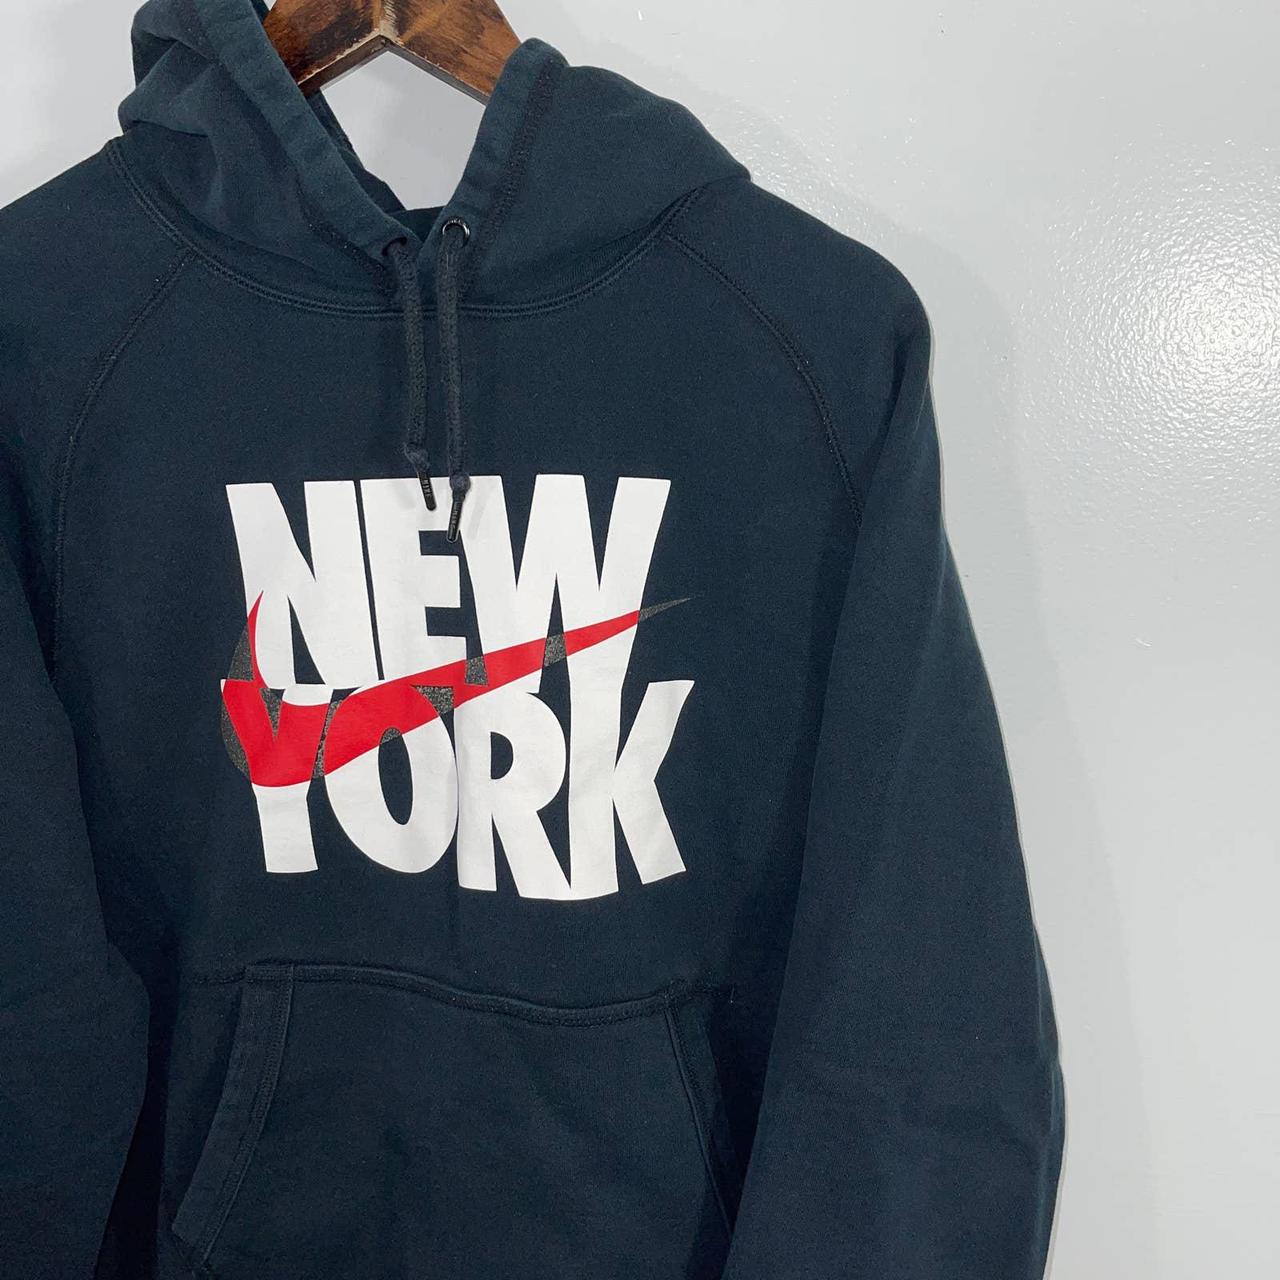 VINTAGE 2000s Y2K Nike New York Hooded Sweatshirt... - Depop